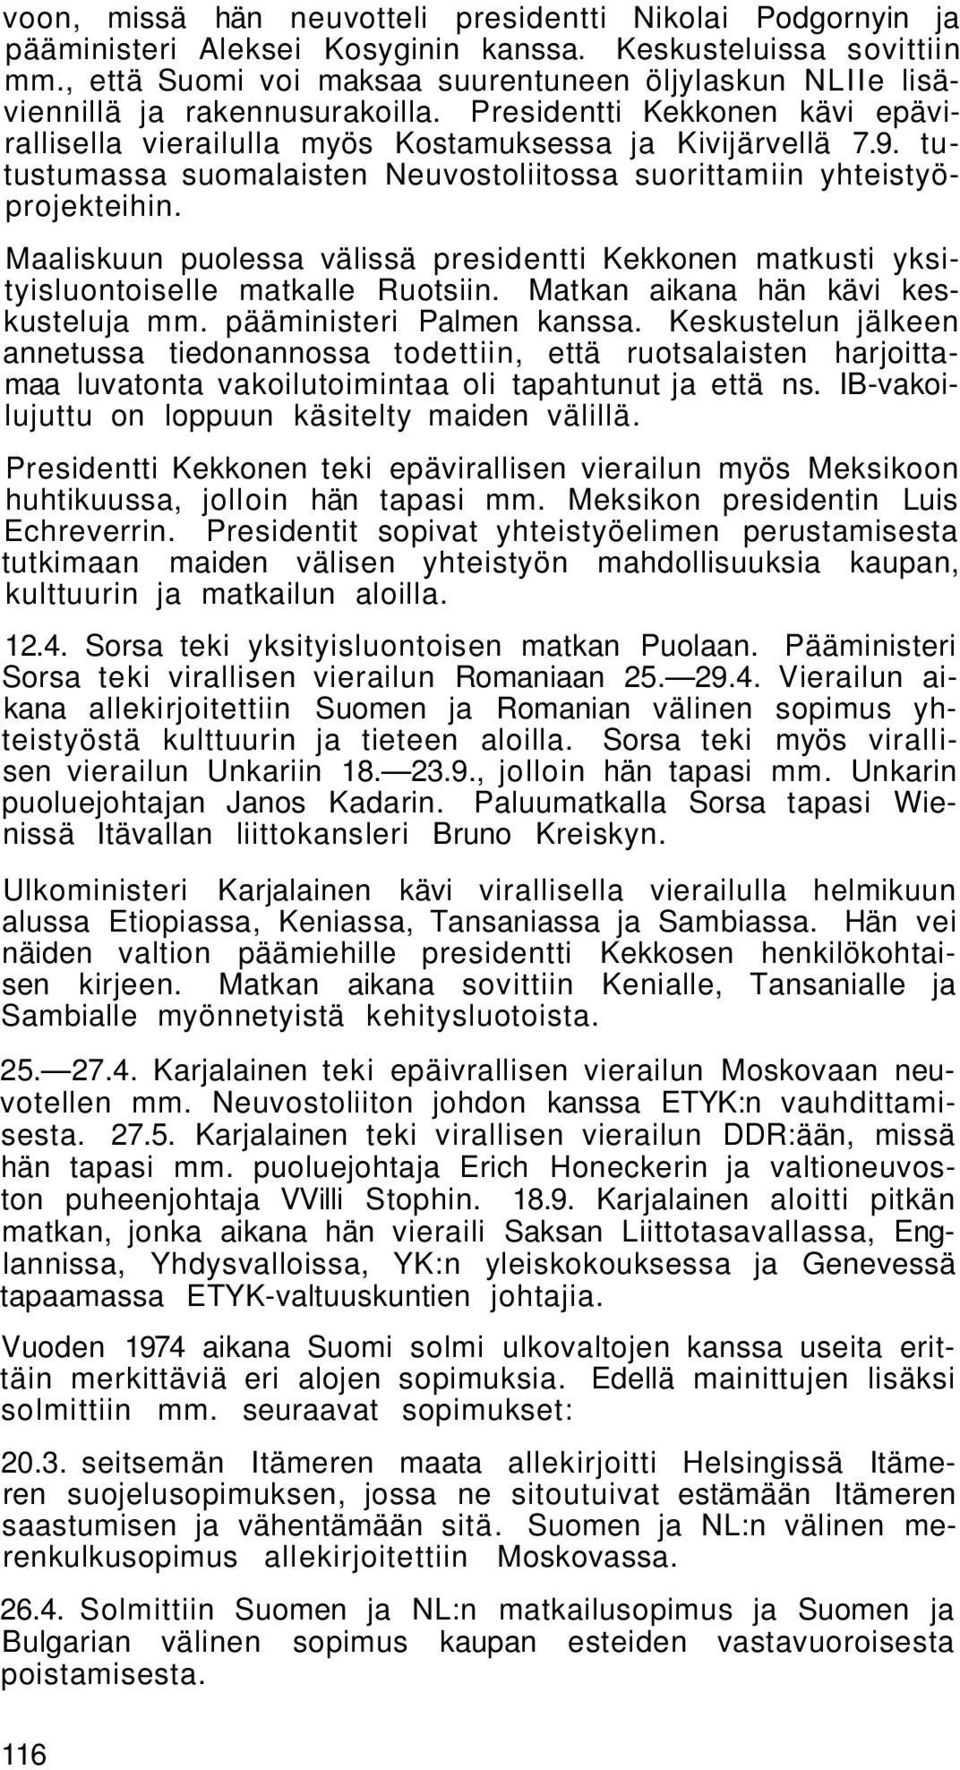 tutustumassa suomalaisten Neuvostoliitossa suorittamiin yhteistyöprojekteihin. Maaliskuun puolessa välissä presidentti Kekkonen matkusti yksityisluontoiselle matkalle Ruotsiin.